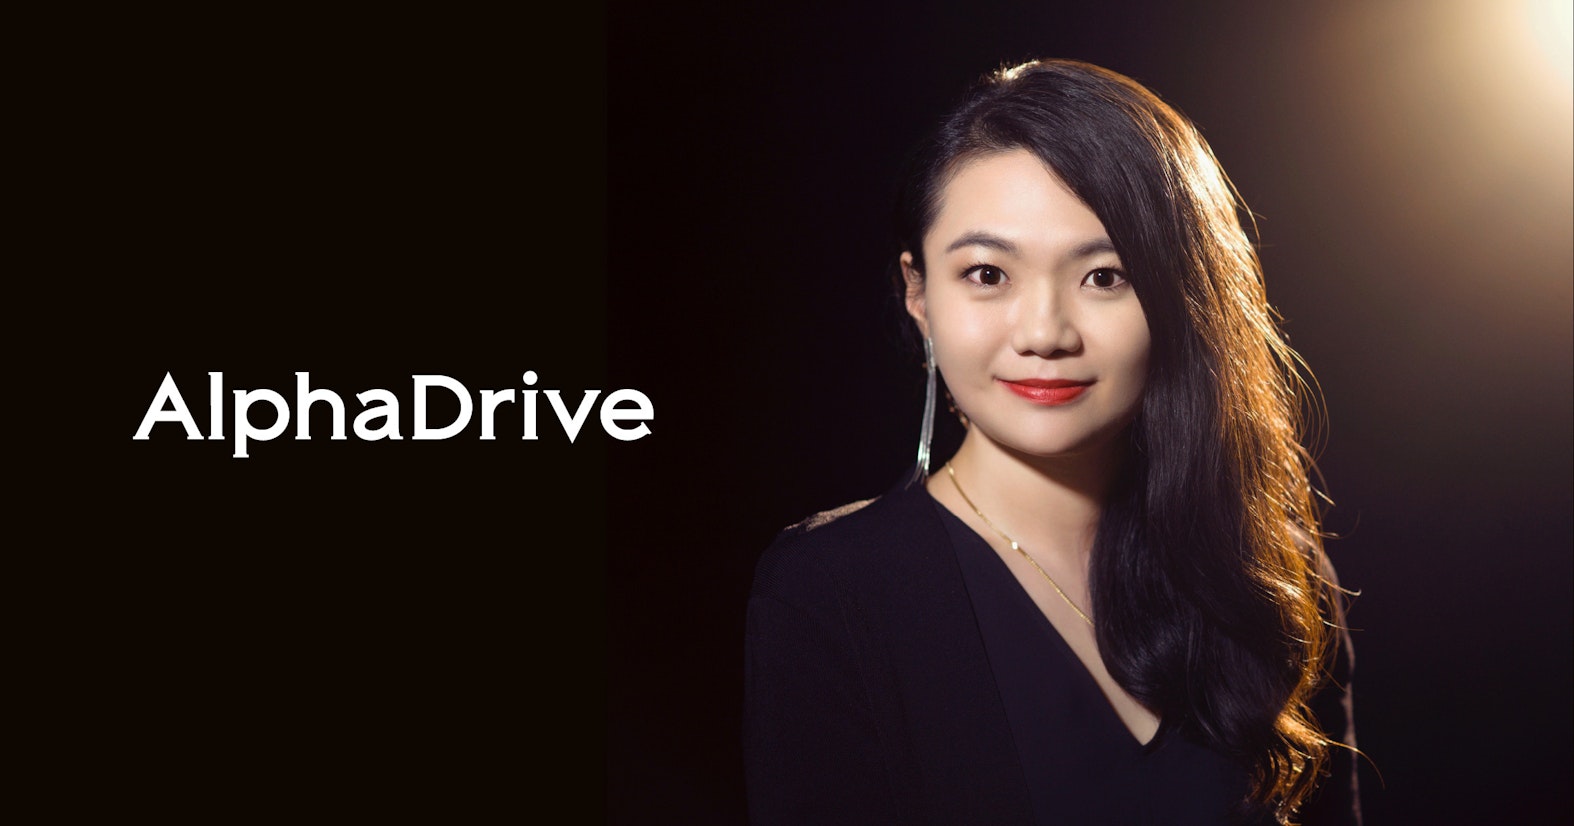 AlphaDrive、執行役員に統括編集長の林 亜季が就任。企業へのコンテンツプロデュースを事業価値に